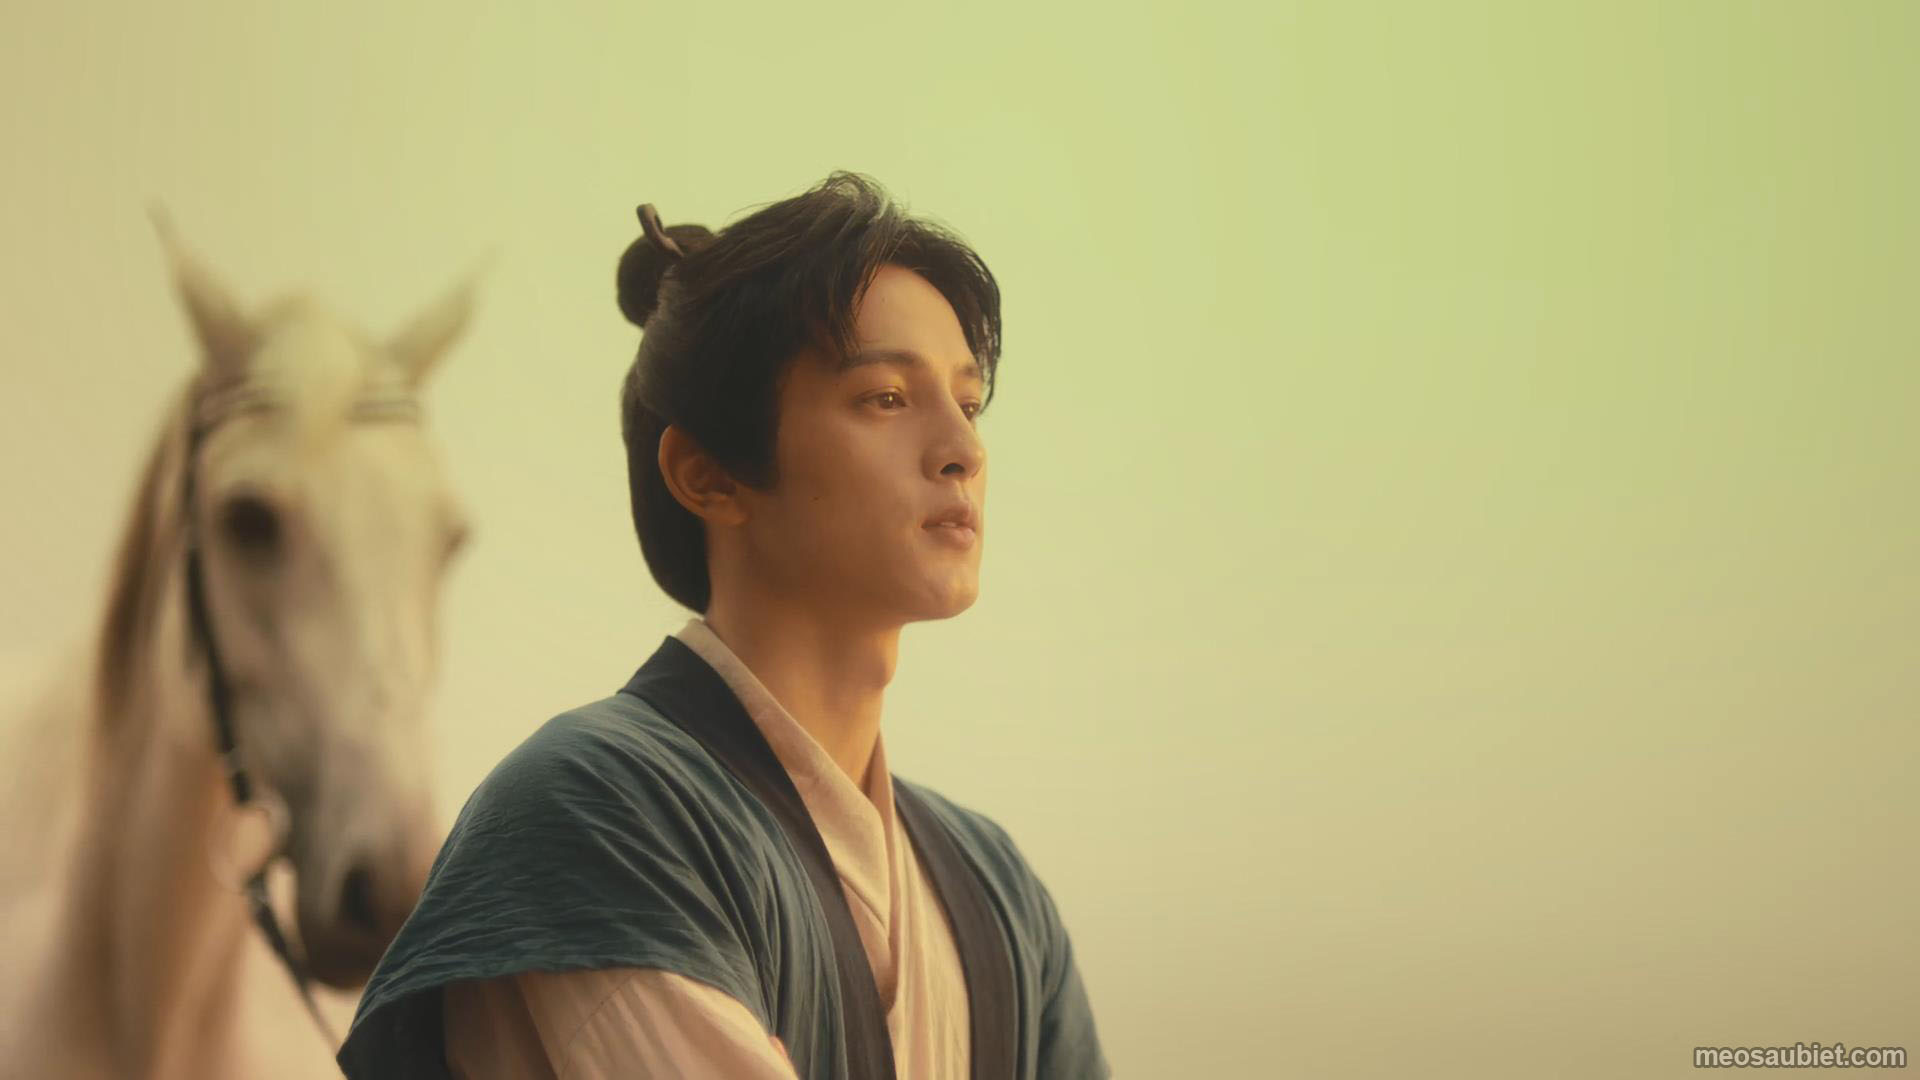 Thiên kim bá đạo 2022 Vương Nhuận Trạch trong vai Phong Mộ Thần